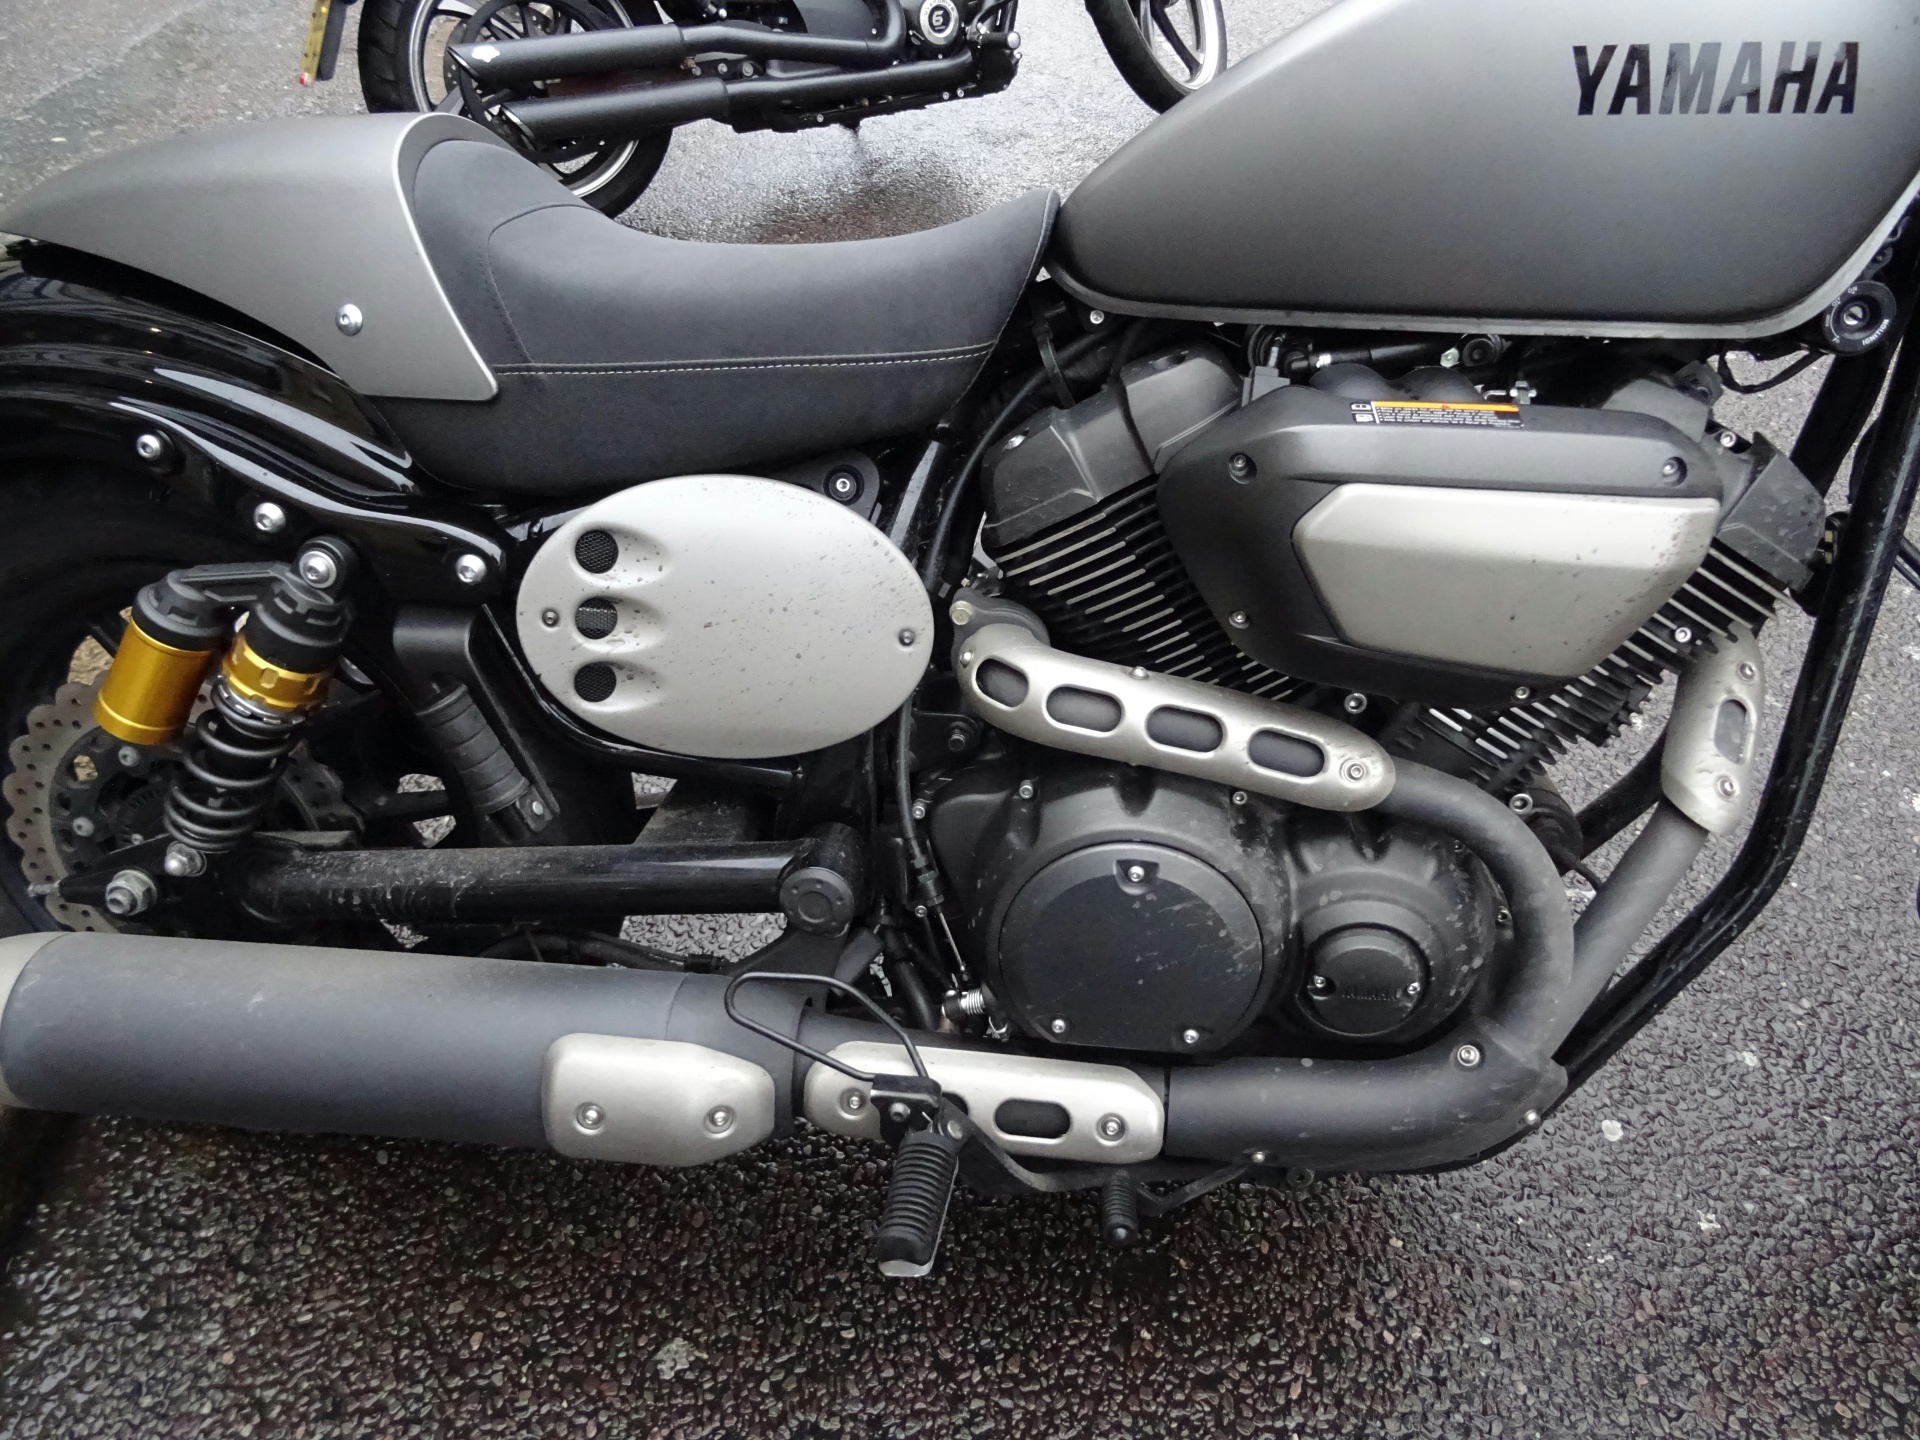 Yamaha 950cc Motorcycle Engine